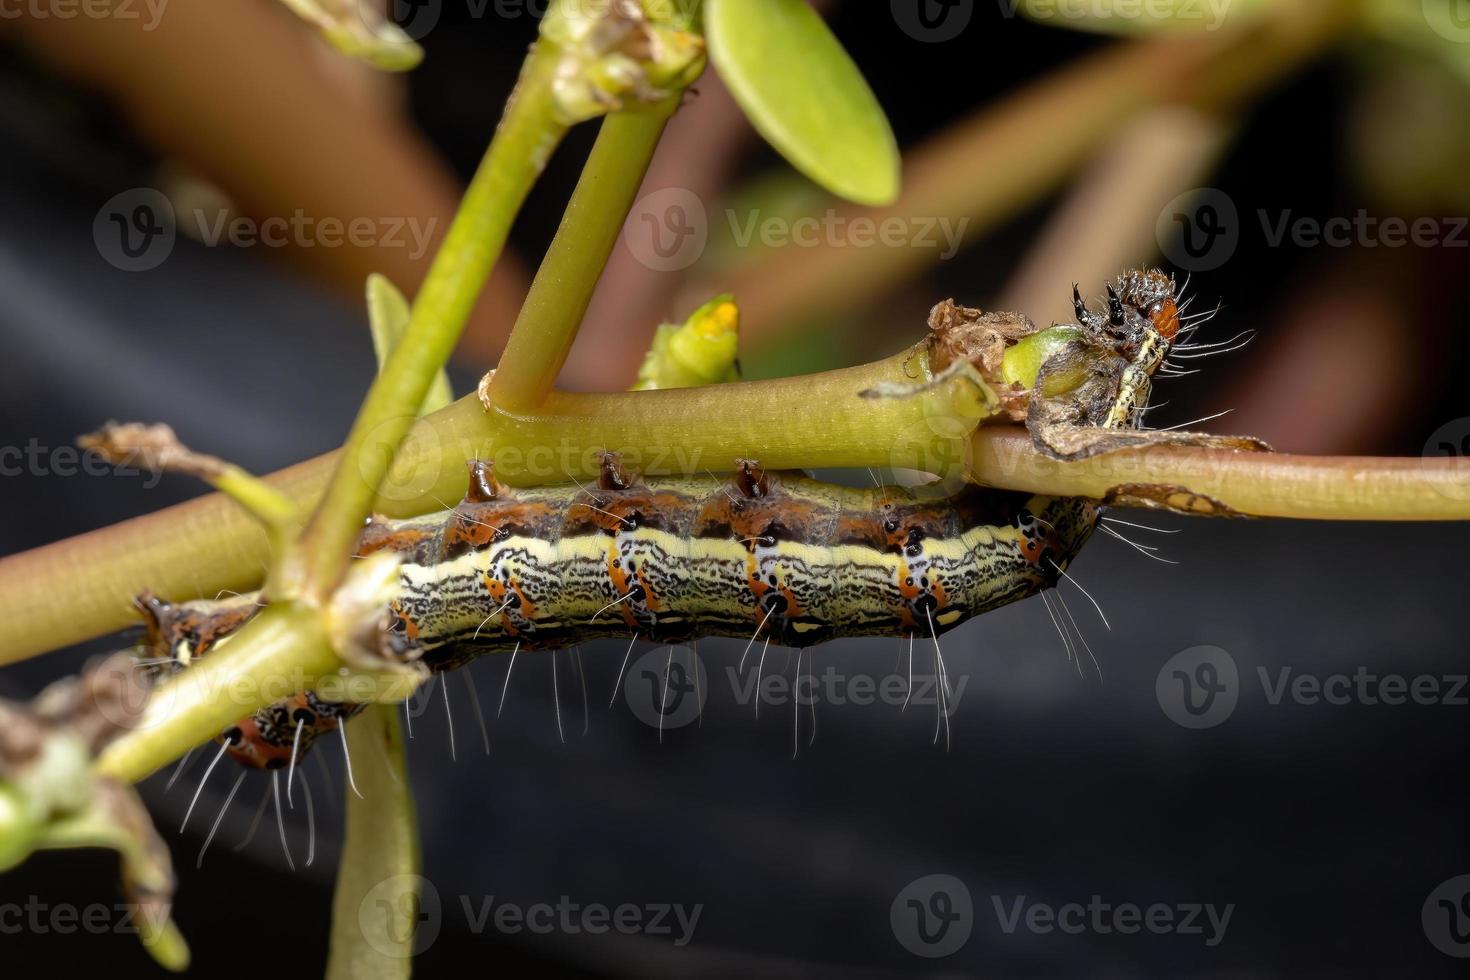 lagarta comendo uma planta comum beldroegas foto